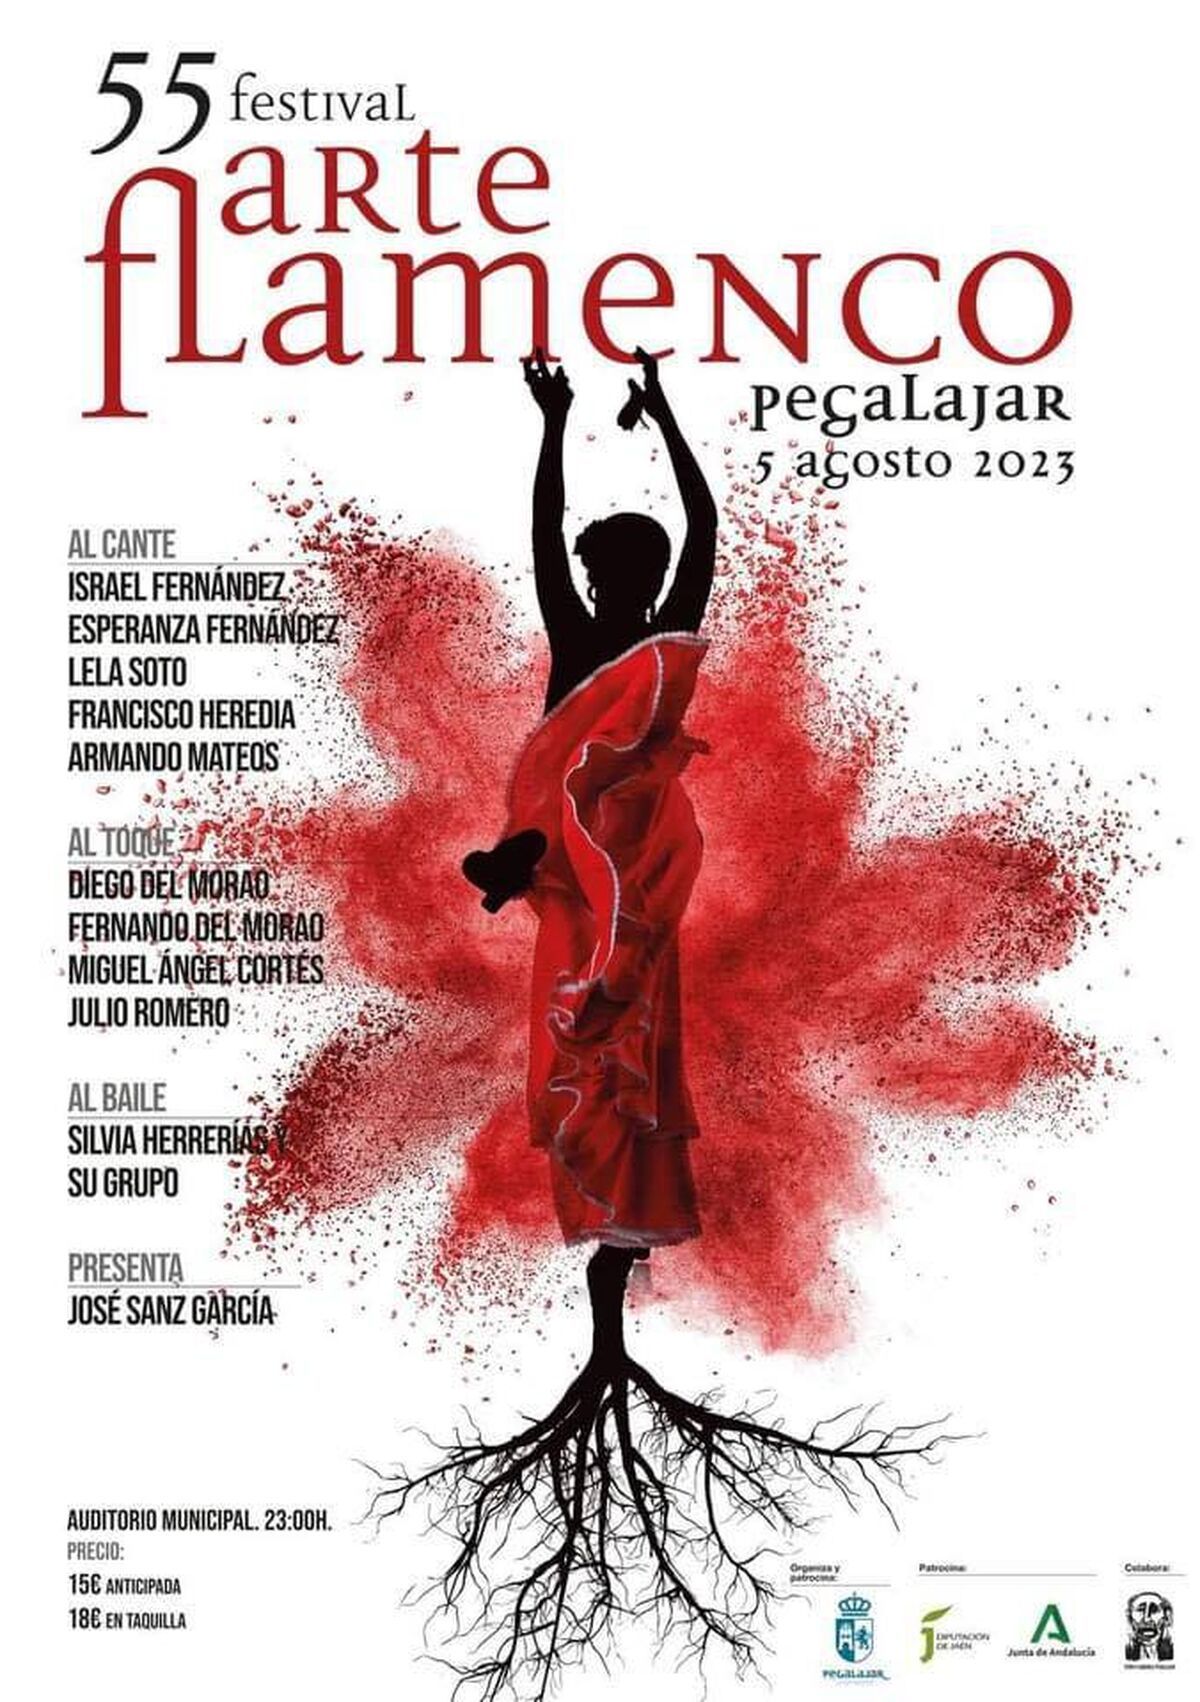 El Cartel Festival Arte Flamenco Pegalajar de este año.